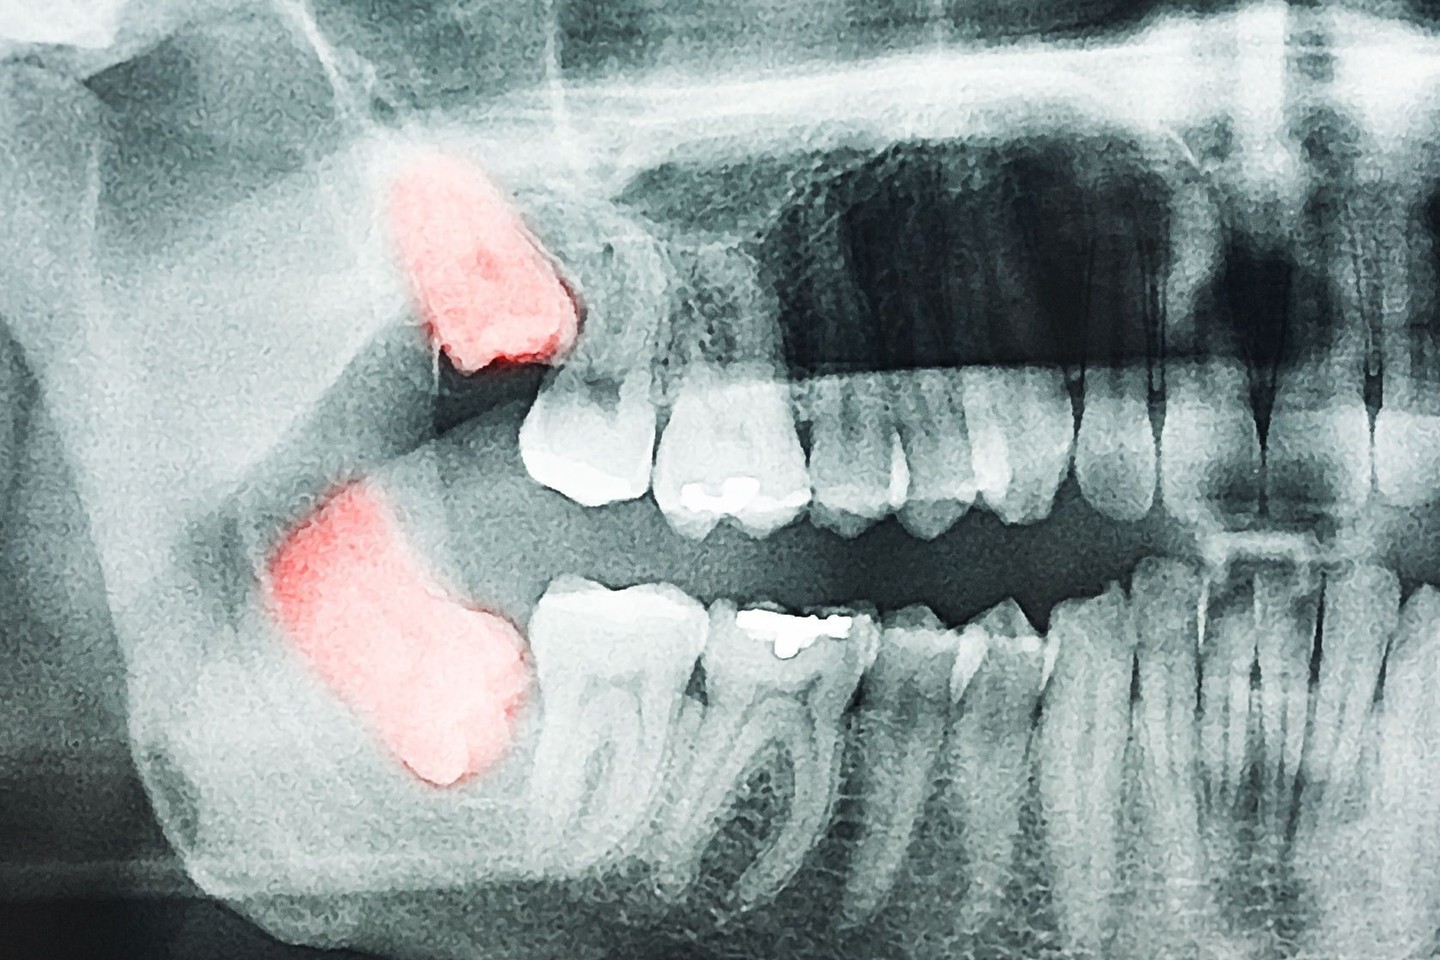 Kreivai augantys protiniai dantys dažnai būna įsirėmę į krūminius, dėl to tarpą tarp šių dantų būna sunku išvalyti ir jie genda.<br>„123rf.com“ nuotr.